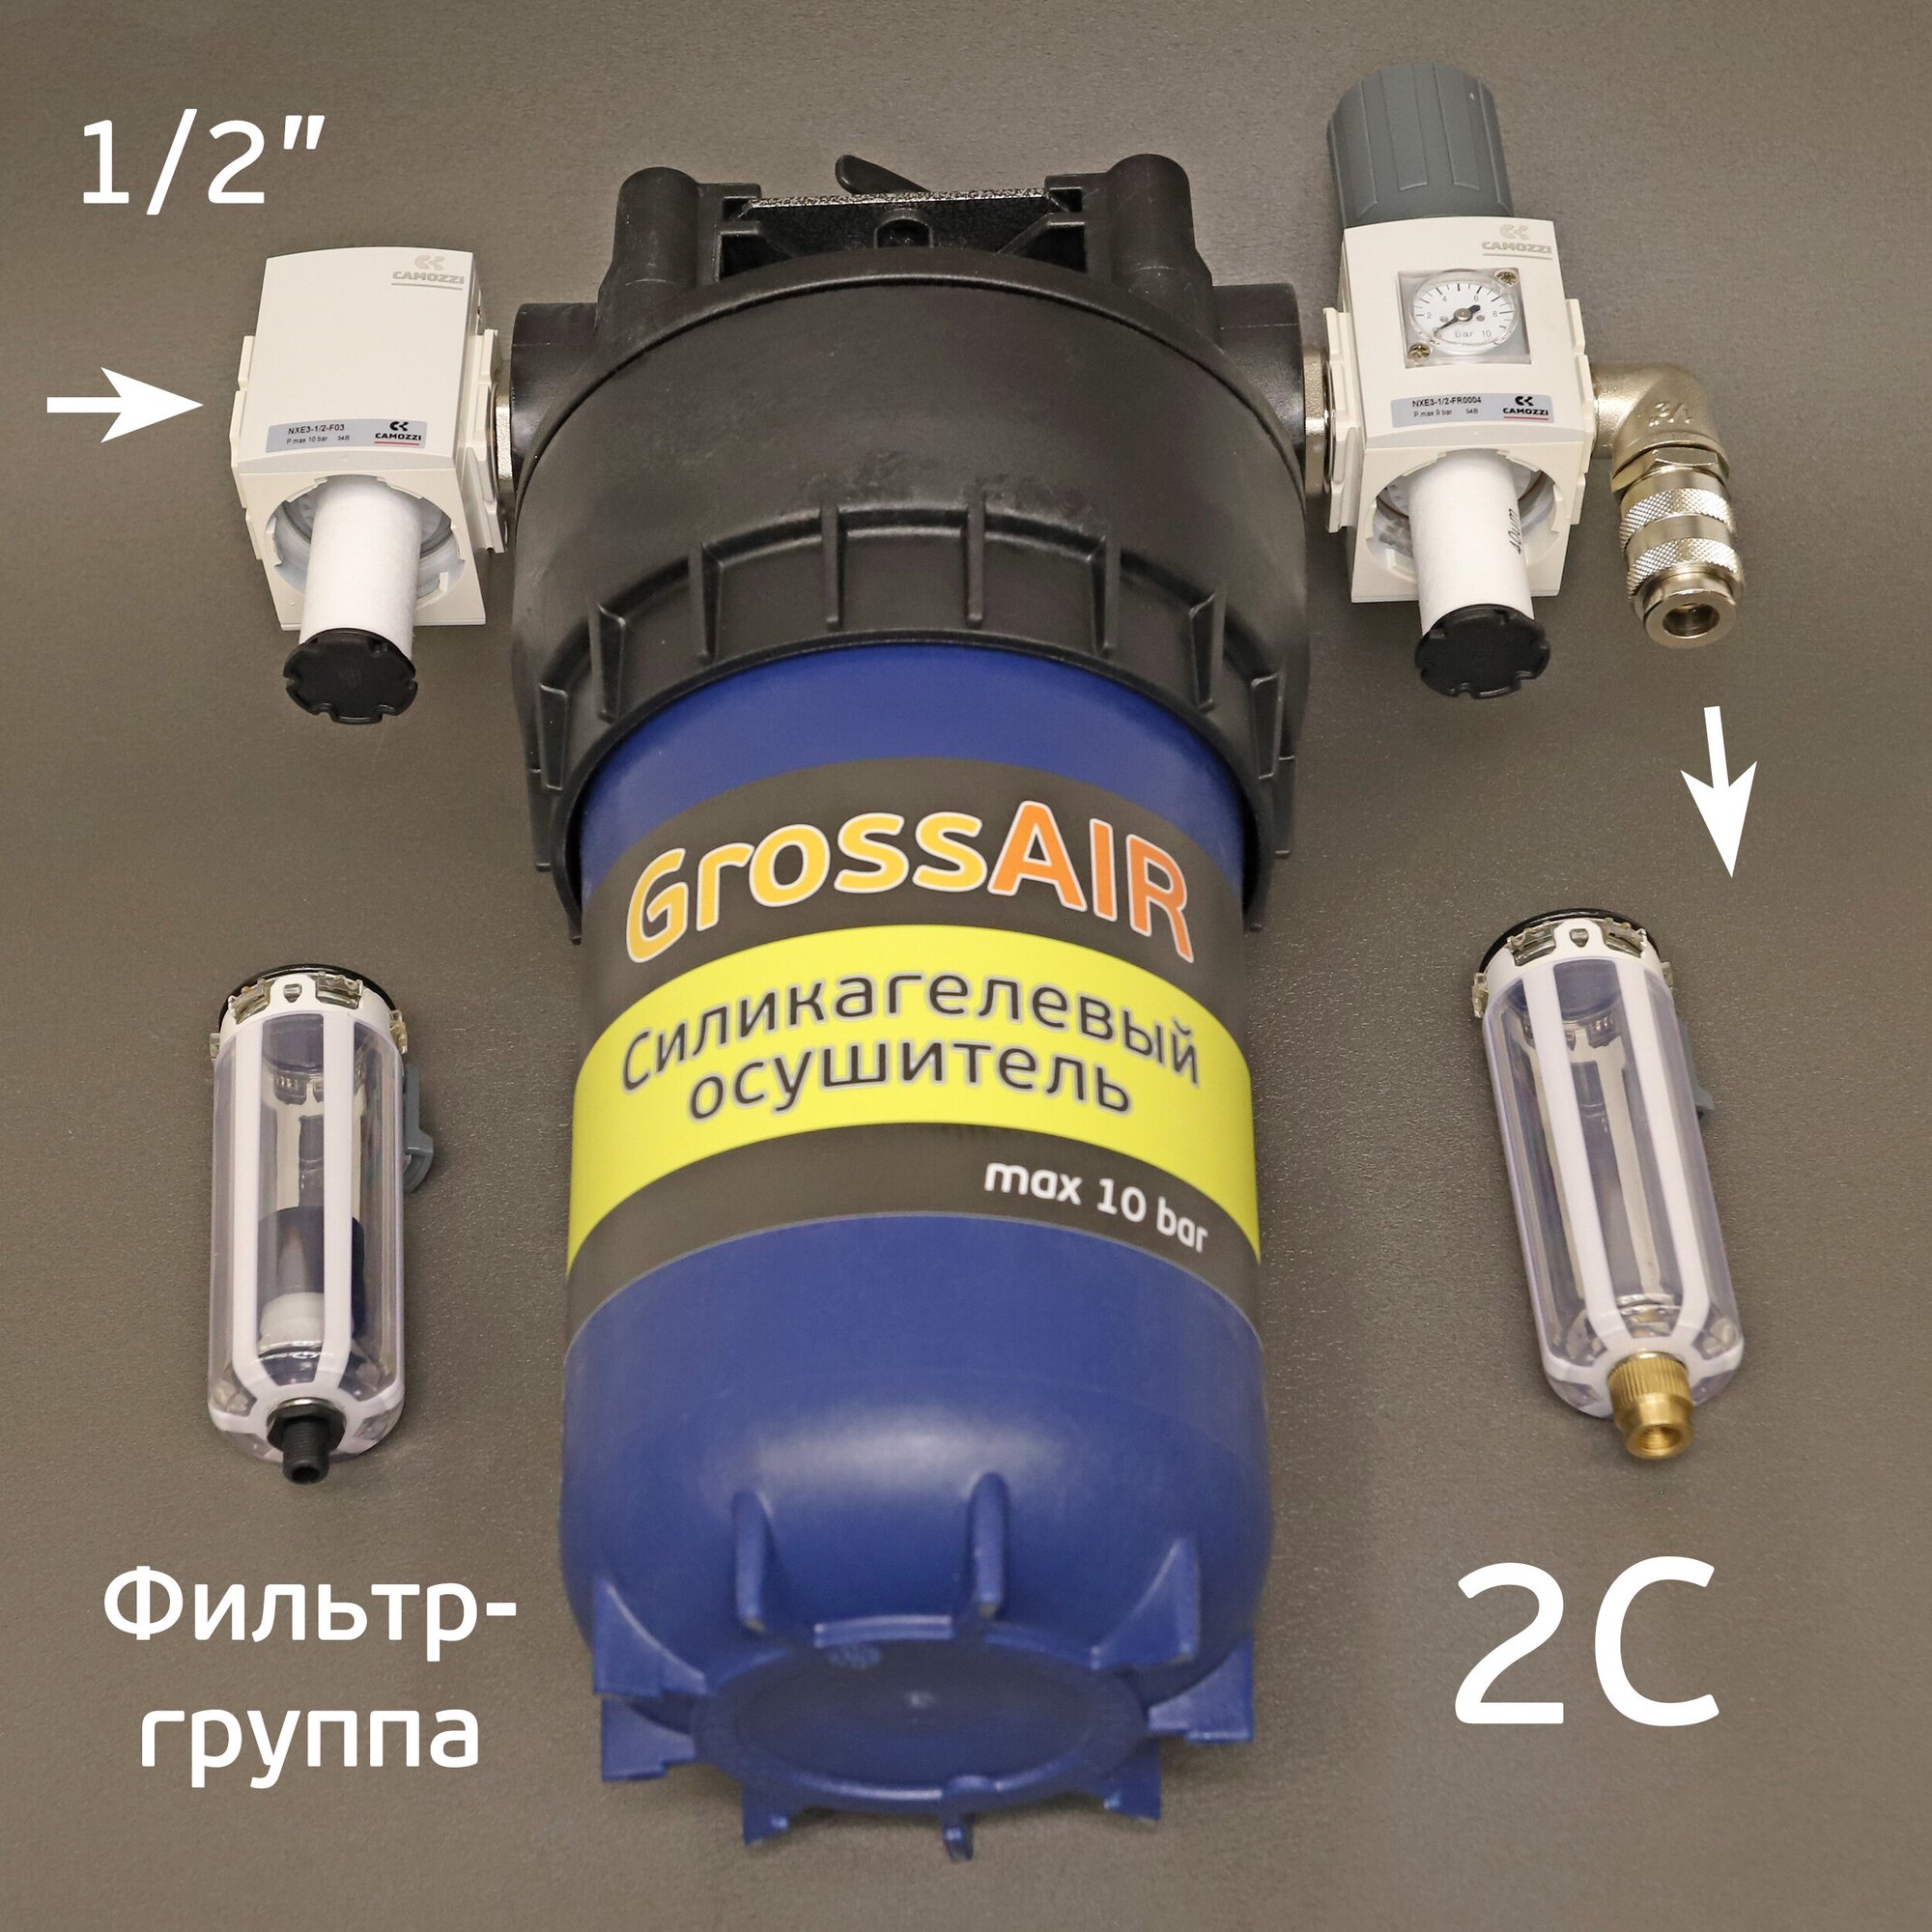 Фильтр-группа GrossAIR 2C для очистки сжатого воздуха Camozzi 1/2"